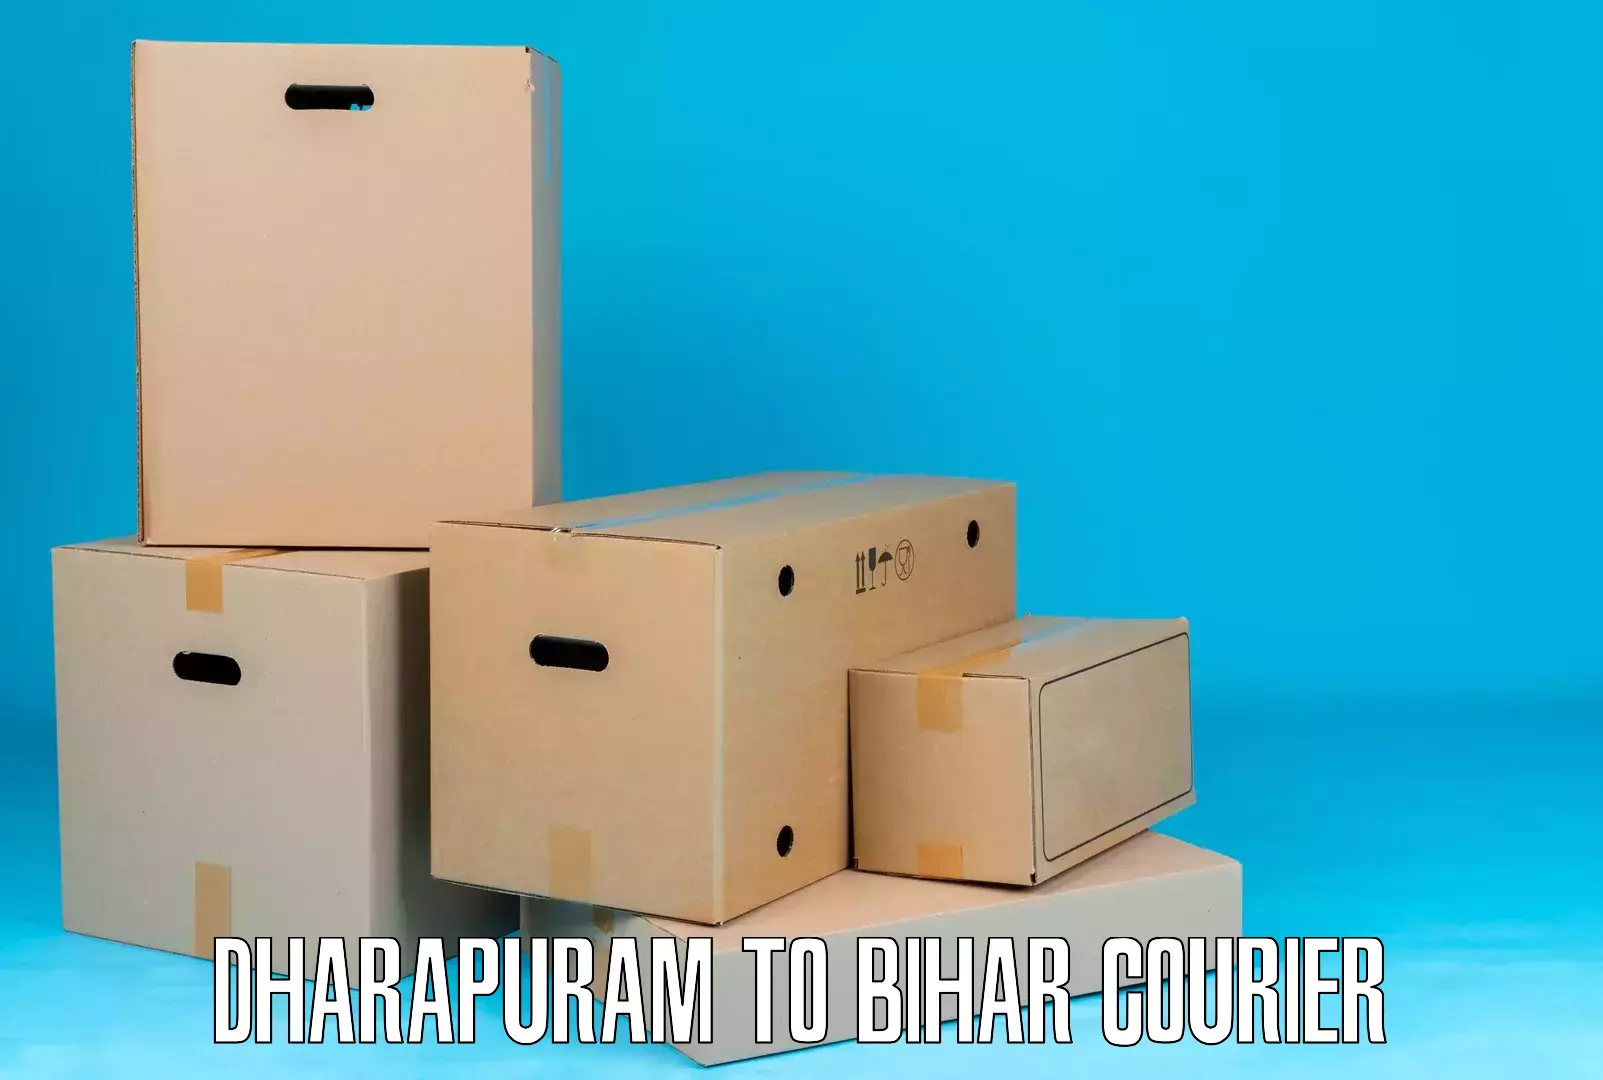 Express package handling in Dharapuram to Bihar